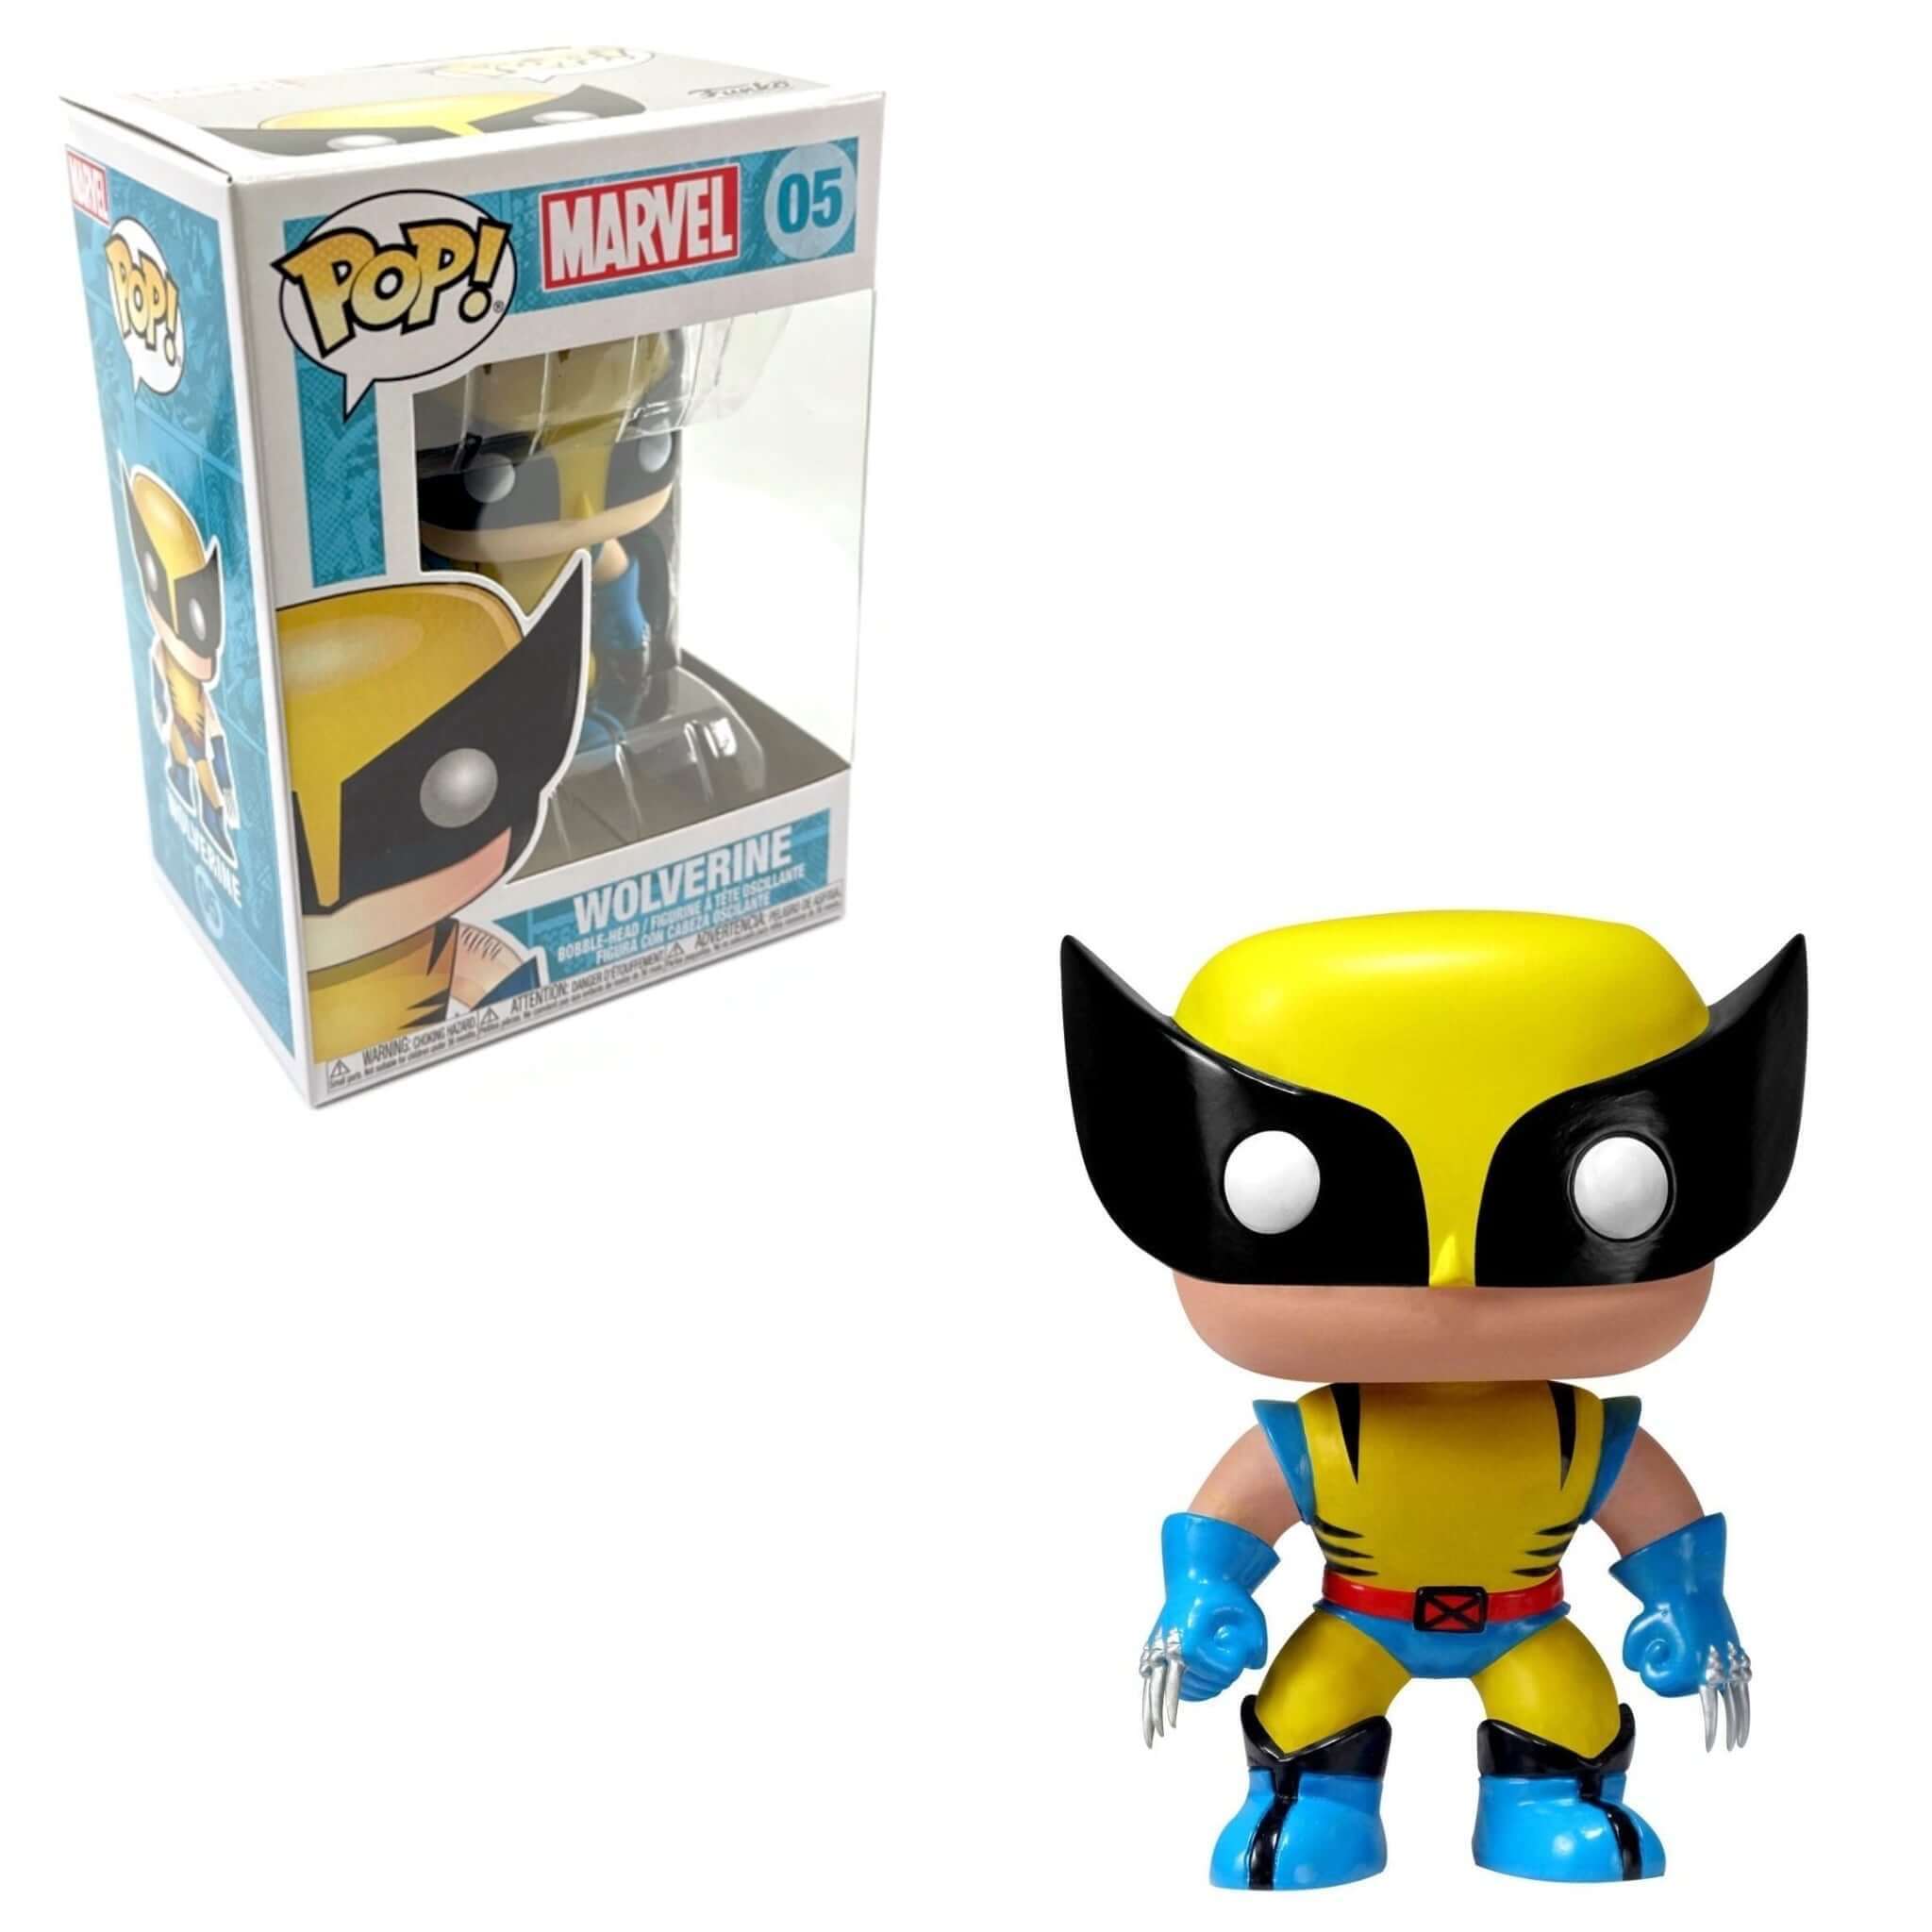 Wolverine (2nd Edition) Funko Pop!